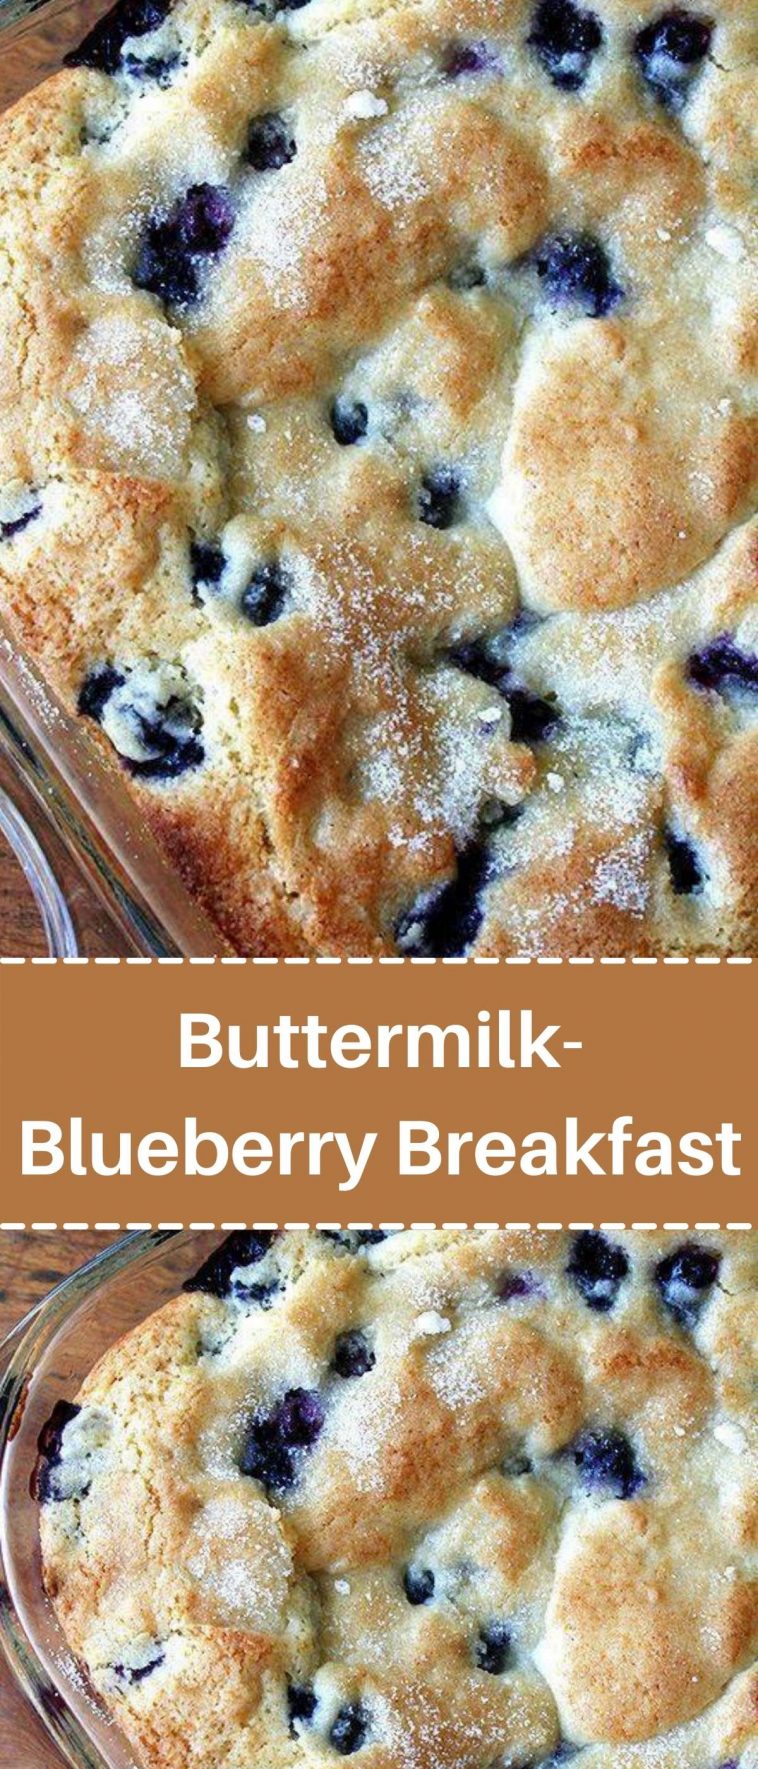 Buttermilk-Blueberry Breakfast